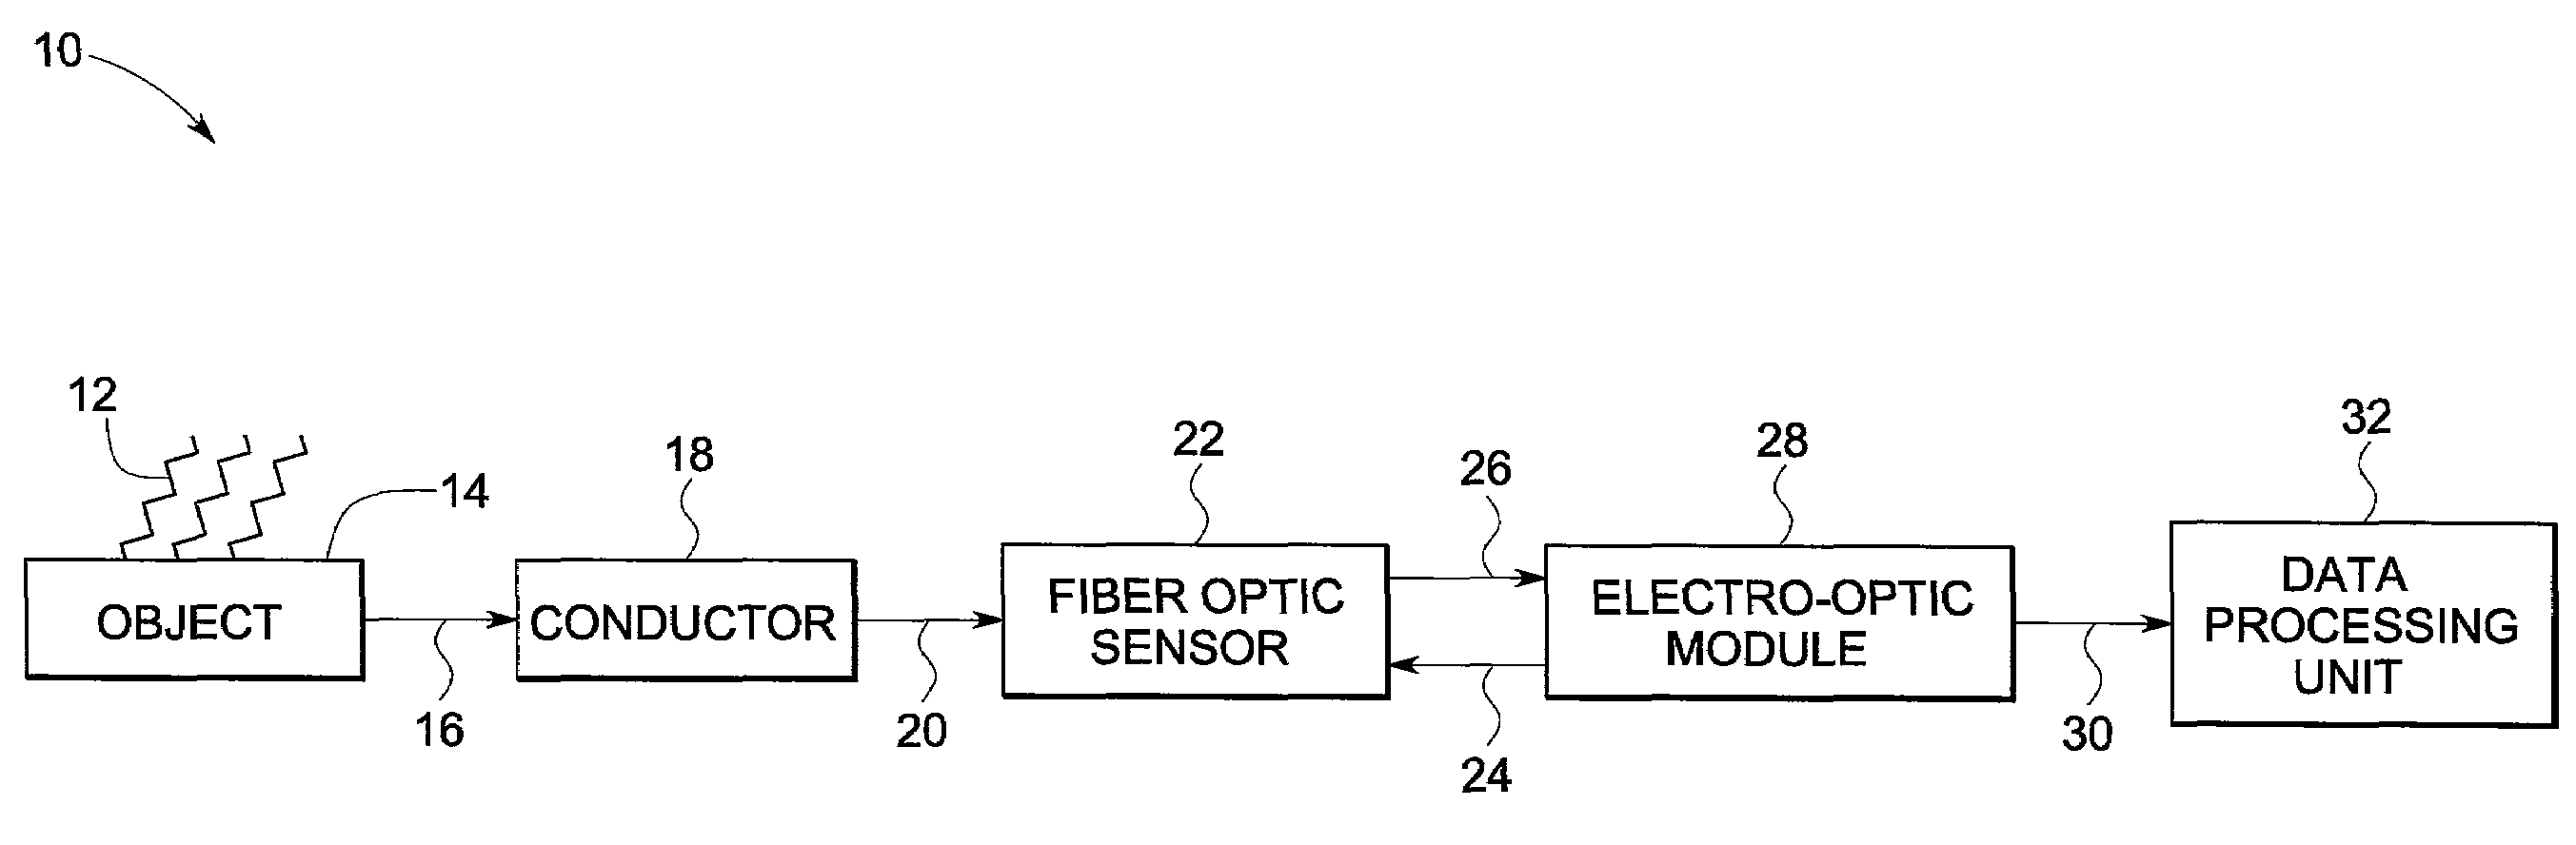 Fiber optic current sensor system and method for detecting lightning